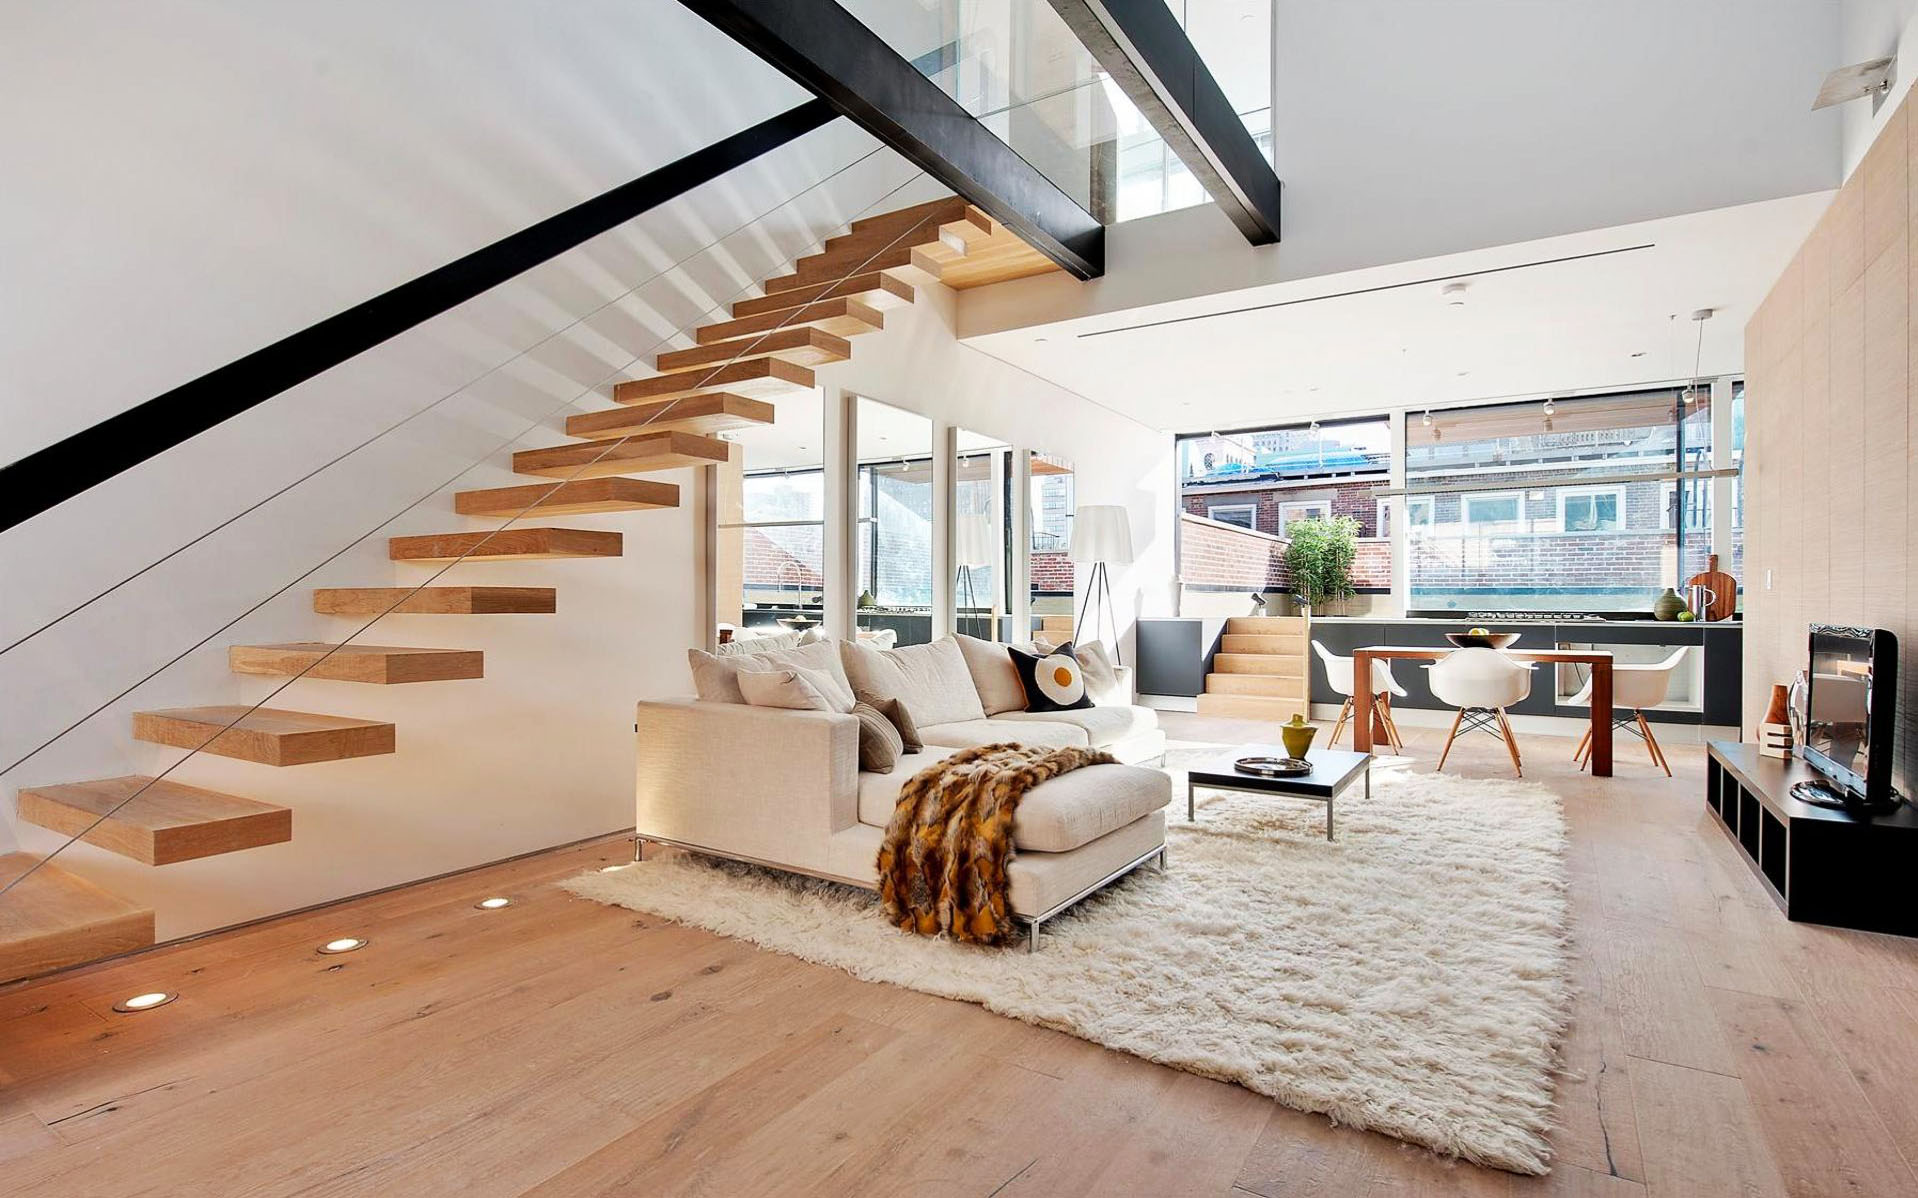 24 Inspiring And Beautiful Apartment Interior Design Ideas Image Of ...